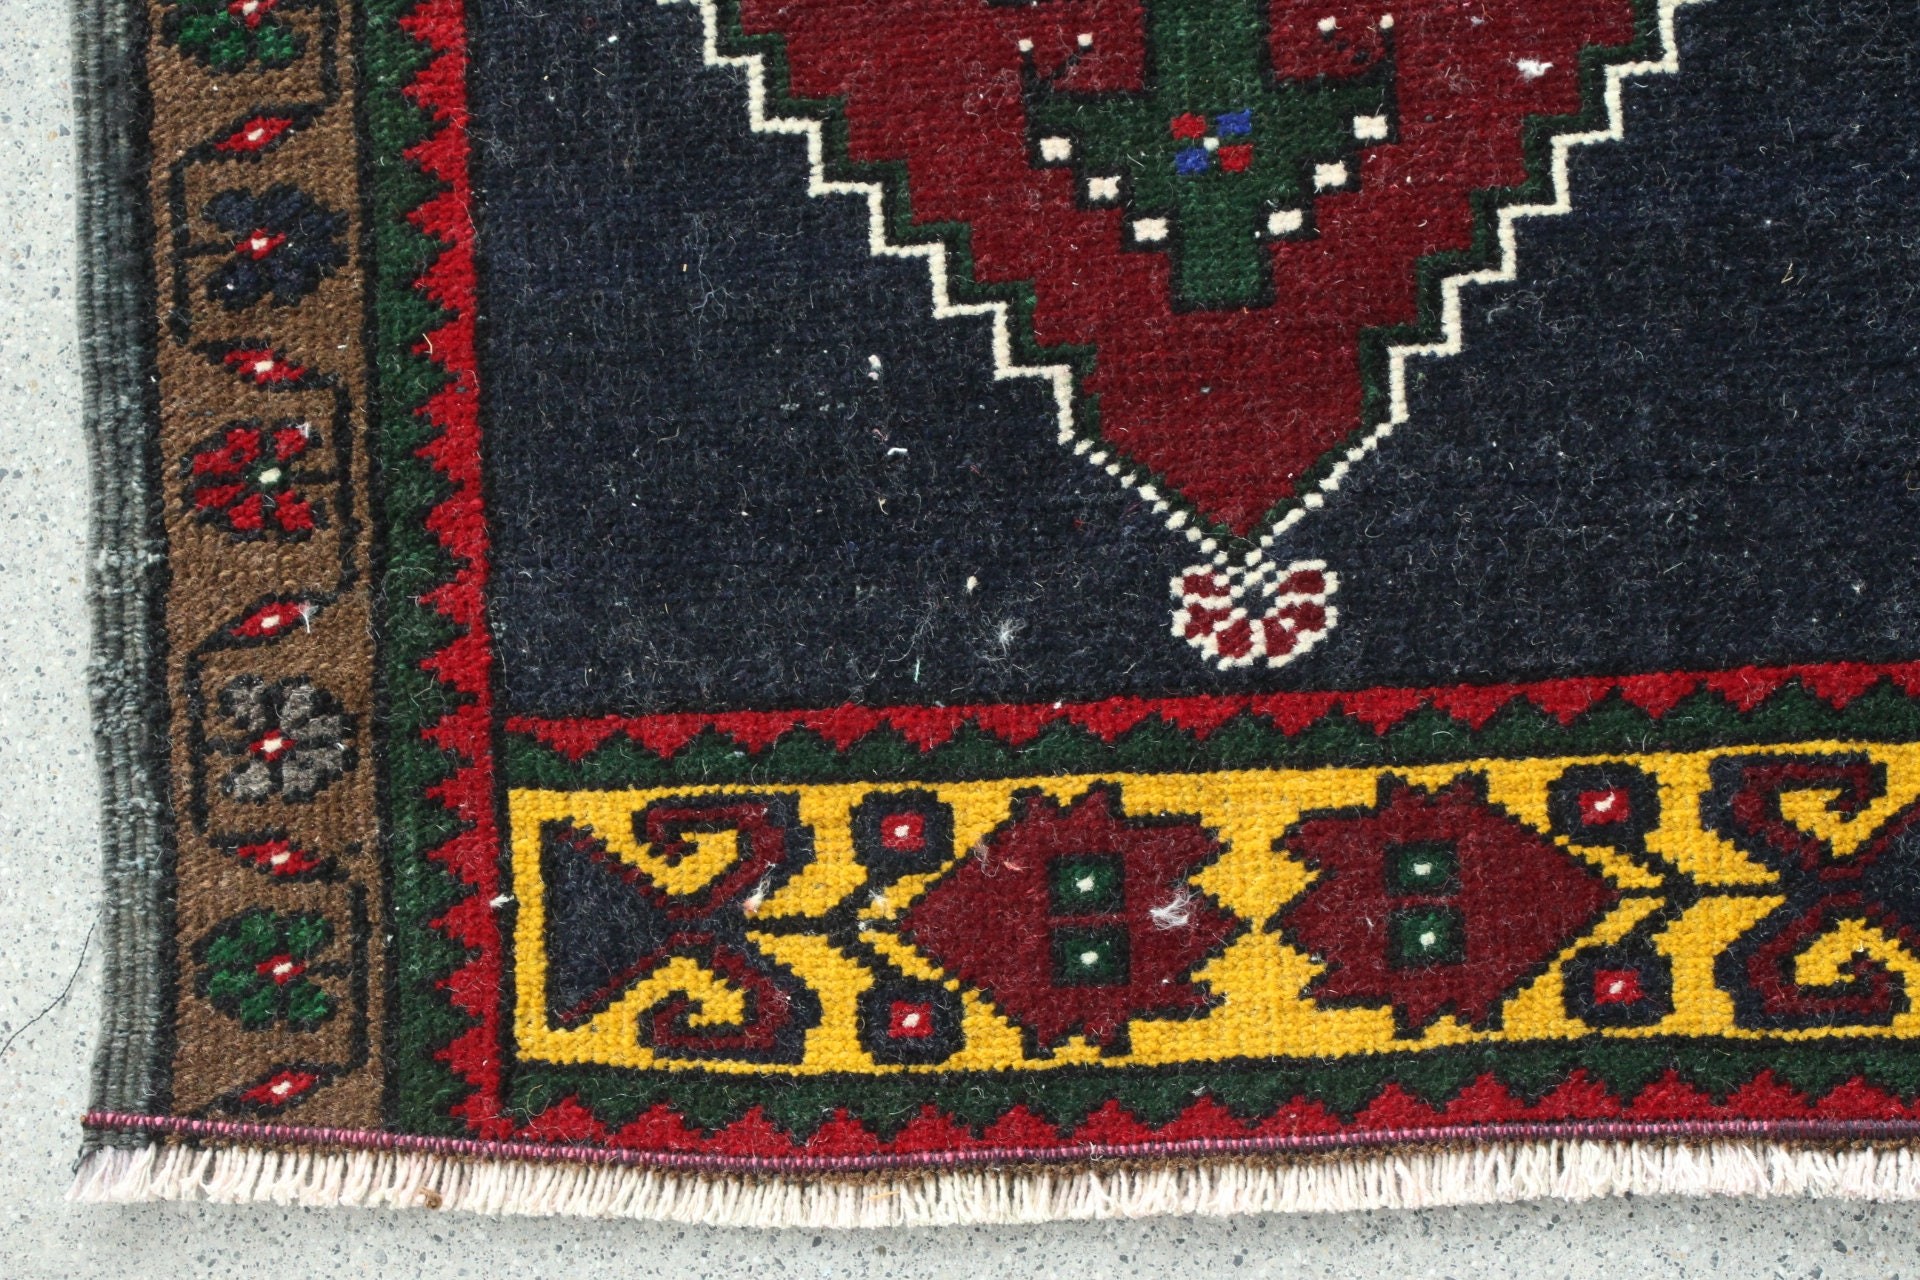 Vintage Rug, Rugs for Door Mat, Nursery Rug, Red Floor Rug, Anatolian Rug, Bedroom Rug, Floor Rug, Turkish Rug, 1.6x3 ft Small Rugs